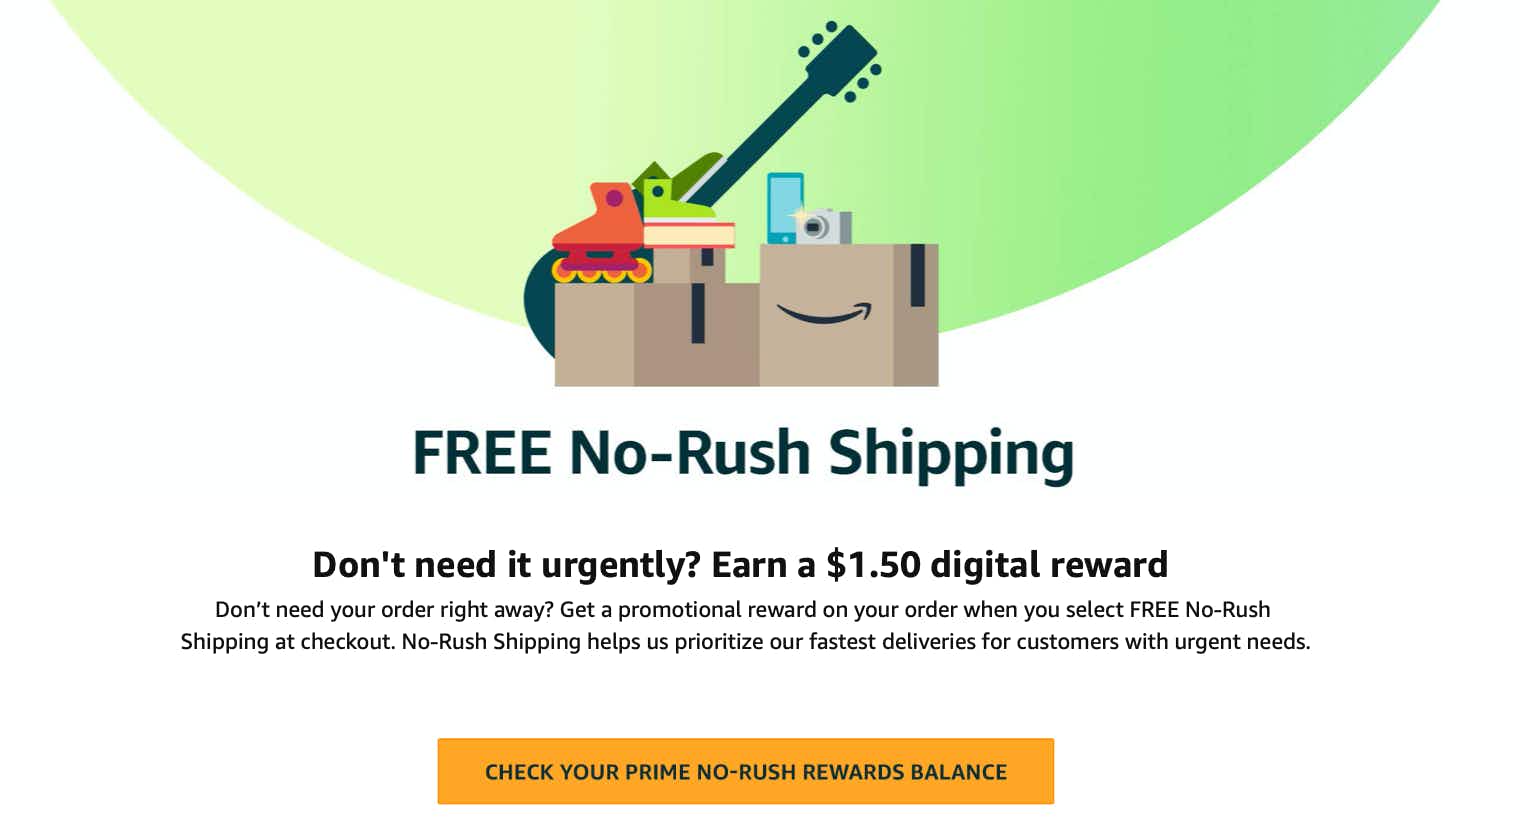 No-Rush Reward digital credits can no longer be used to